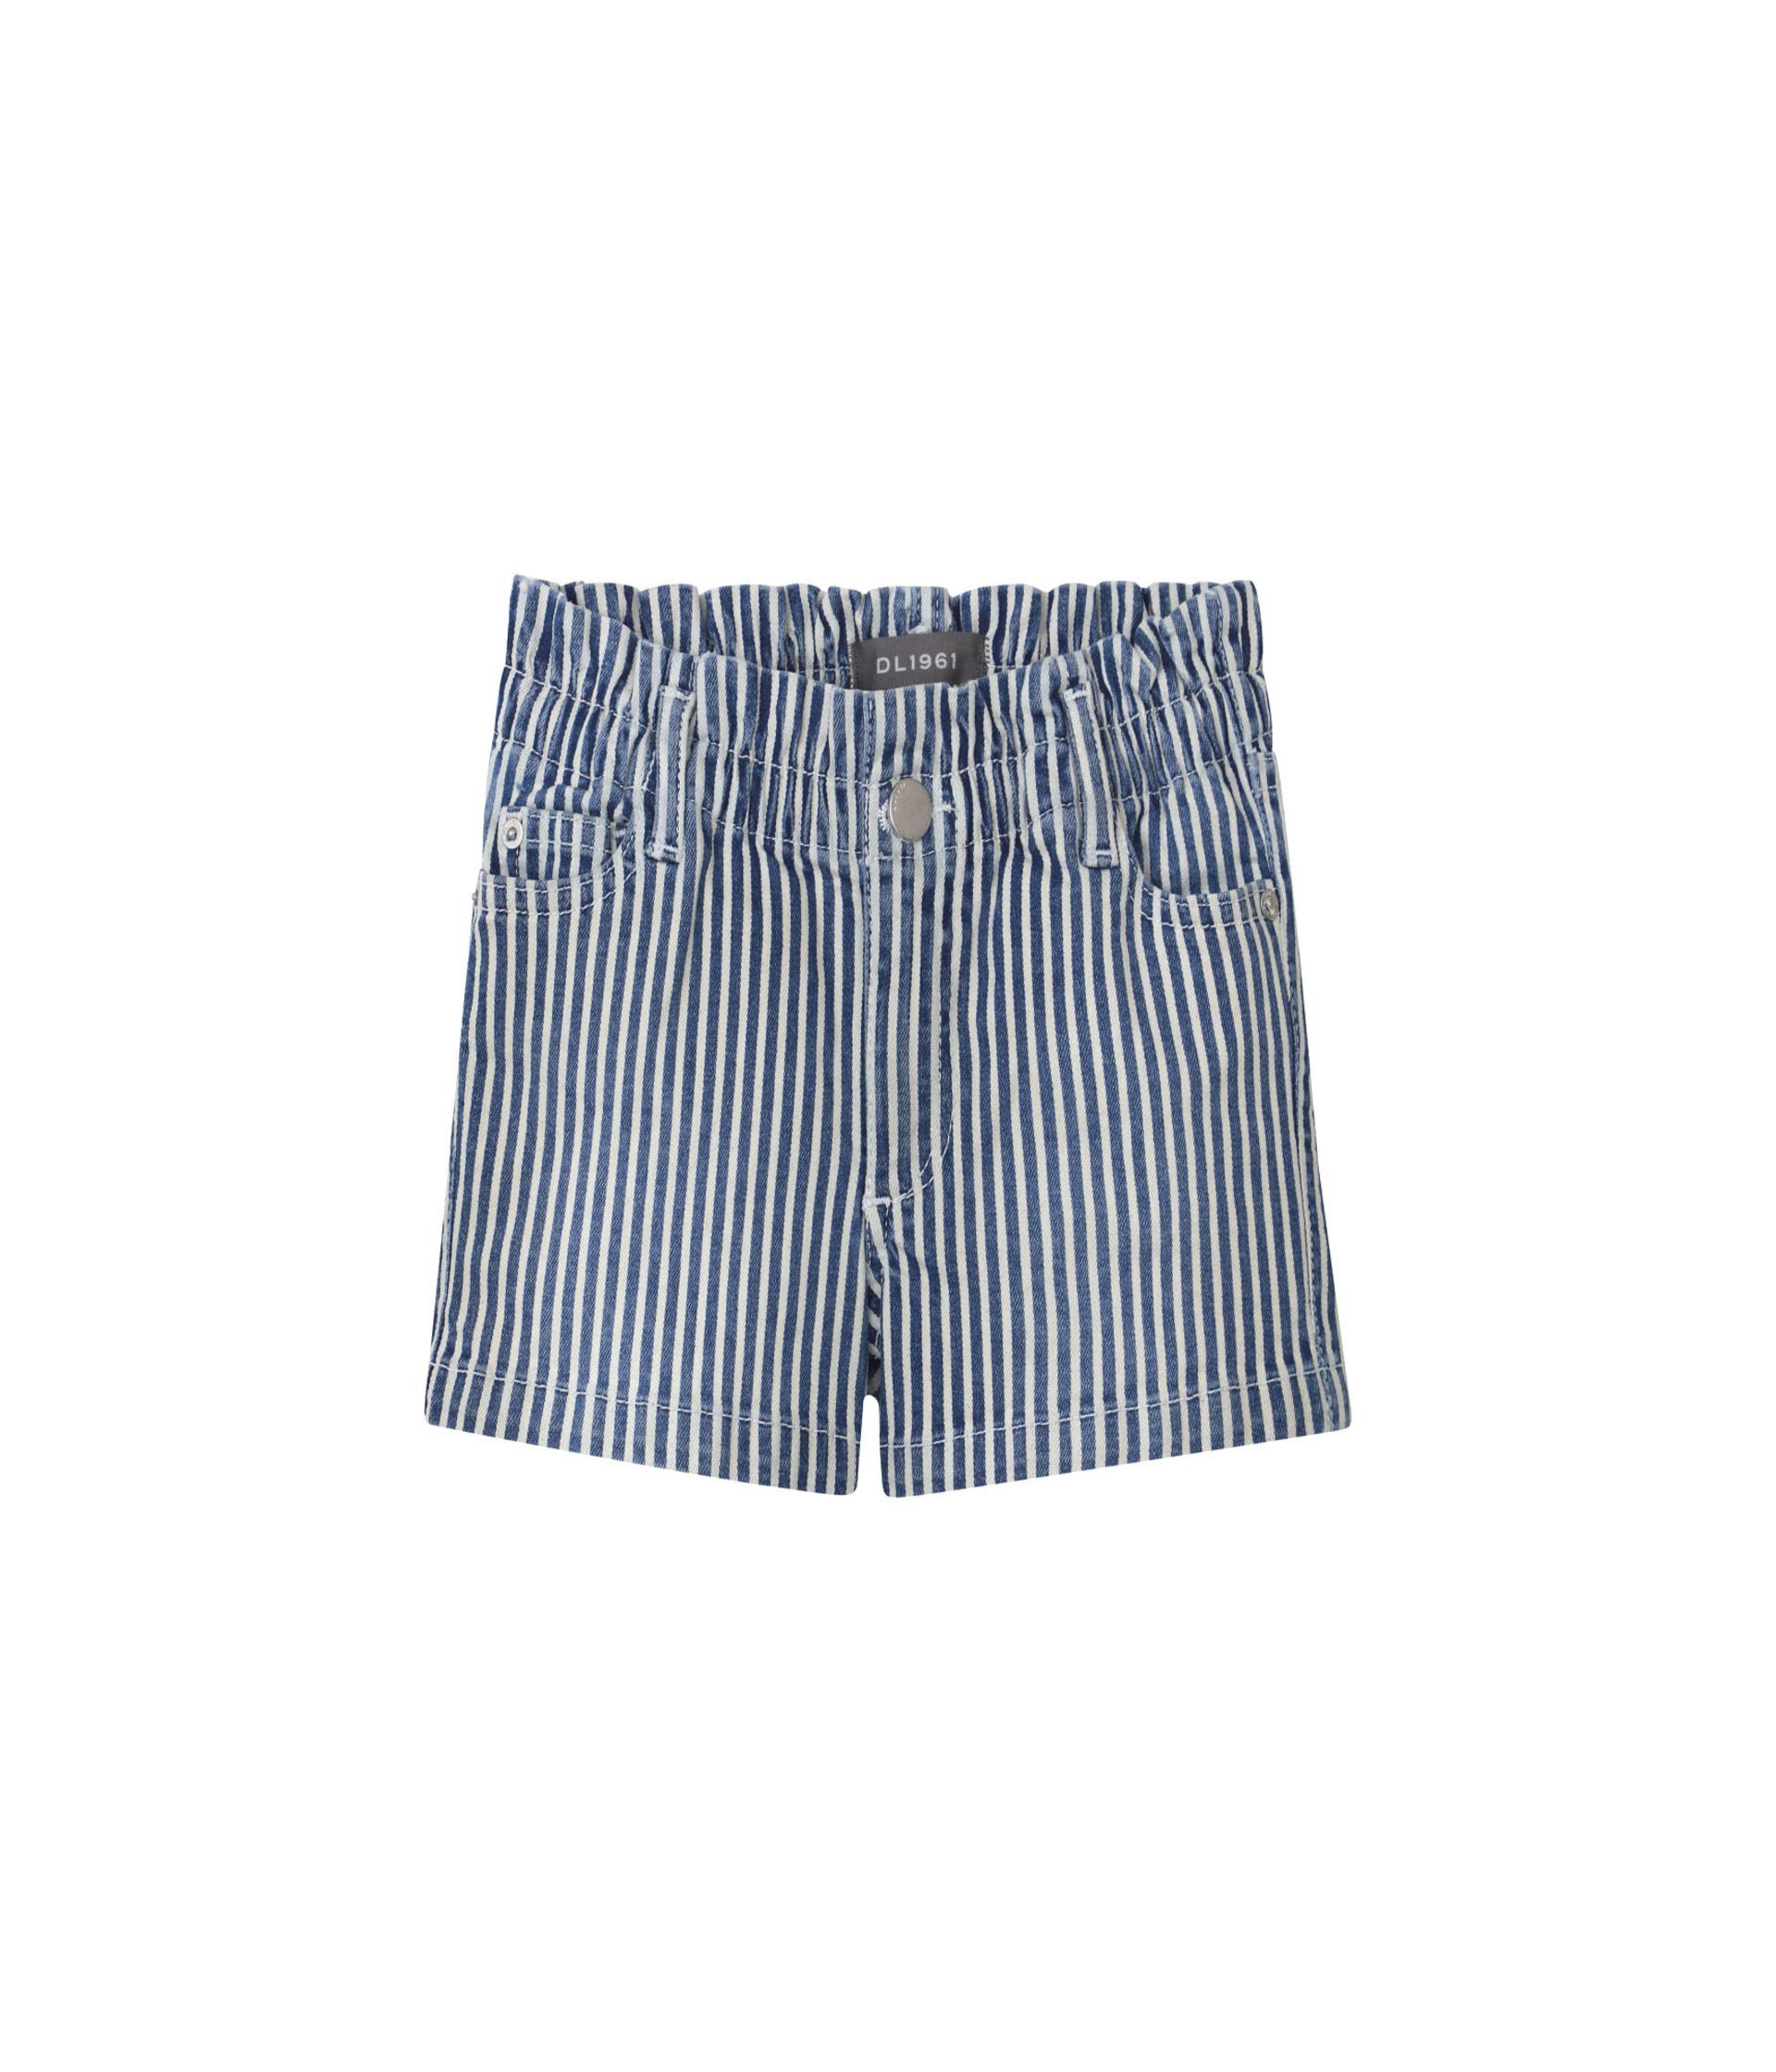 брюки dl1961 jay track chino цвет dewey stripe Шорты DL1961 Kids, Lucy Paper Bag Shorts in Dark Stripe